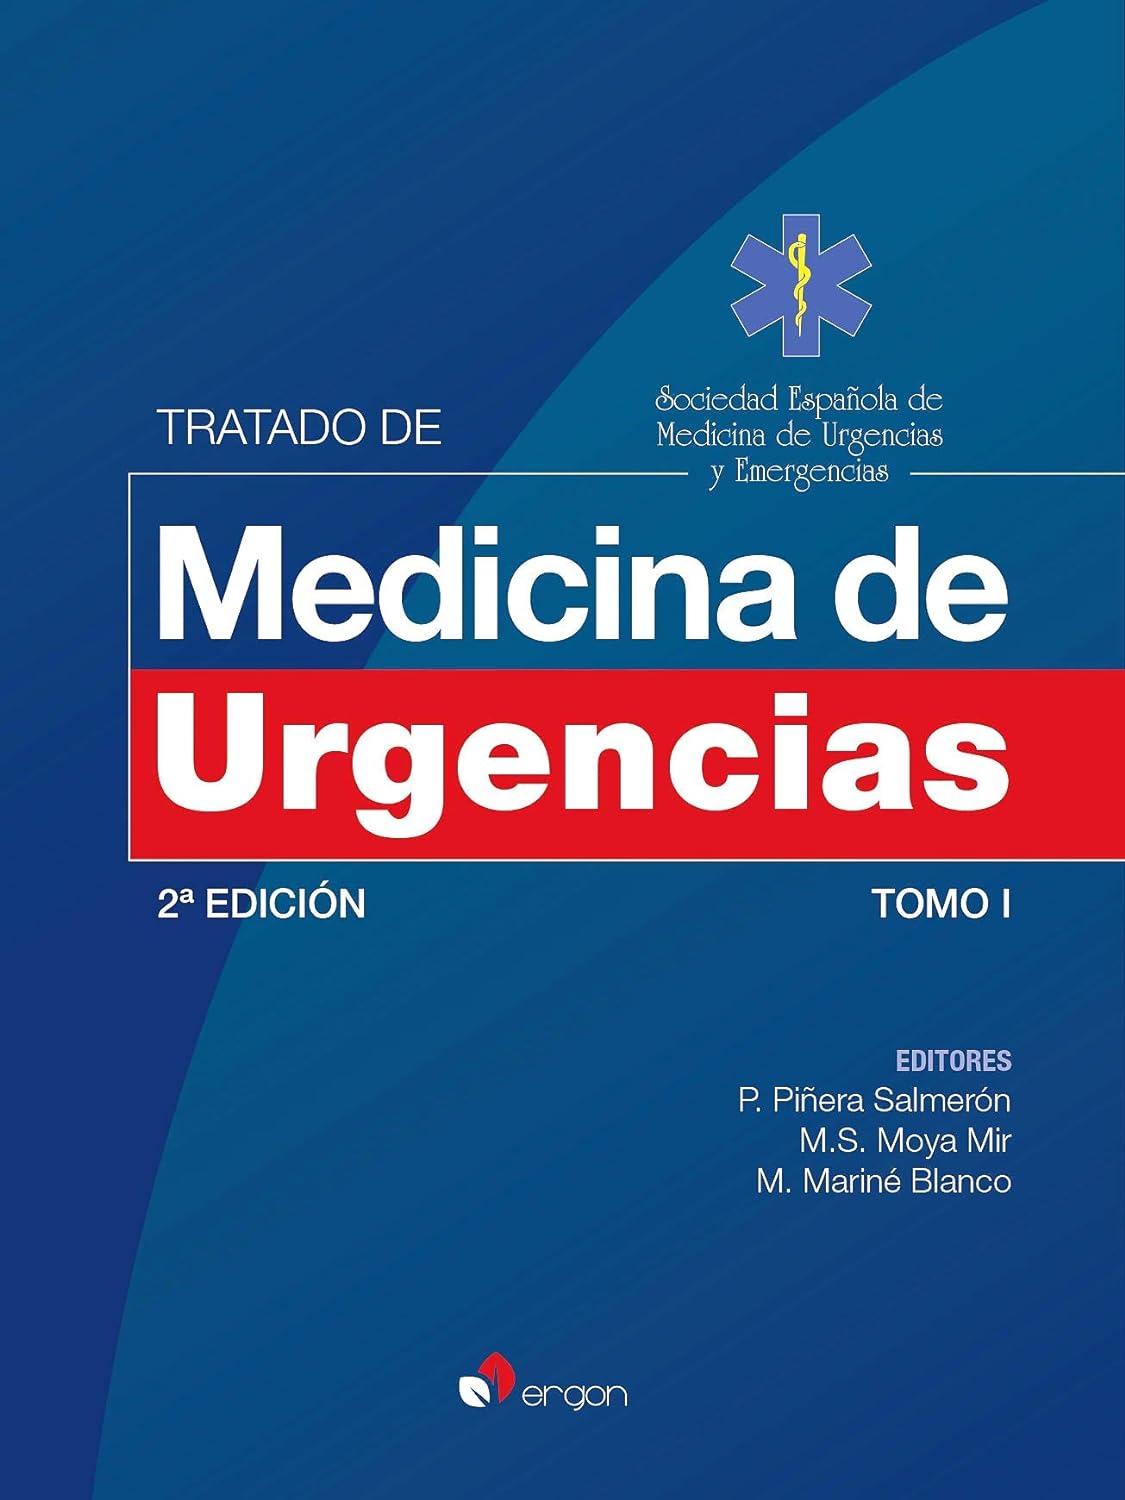 Imagen de portada del libro Tratado de medicina de urgencias